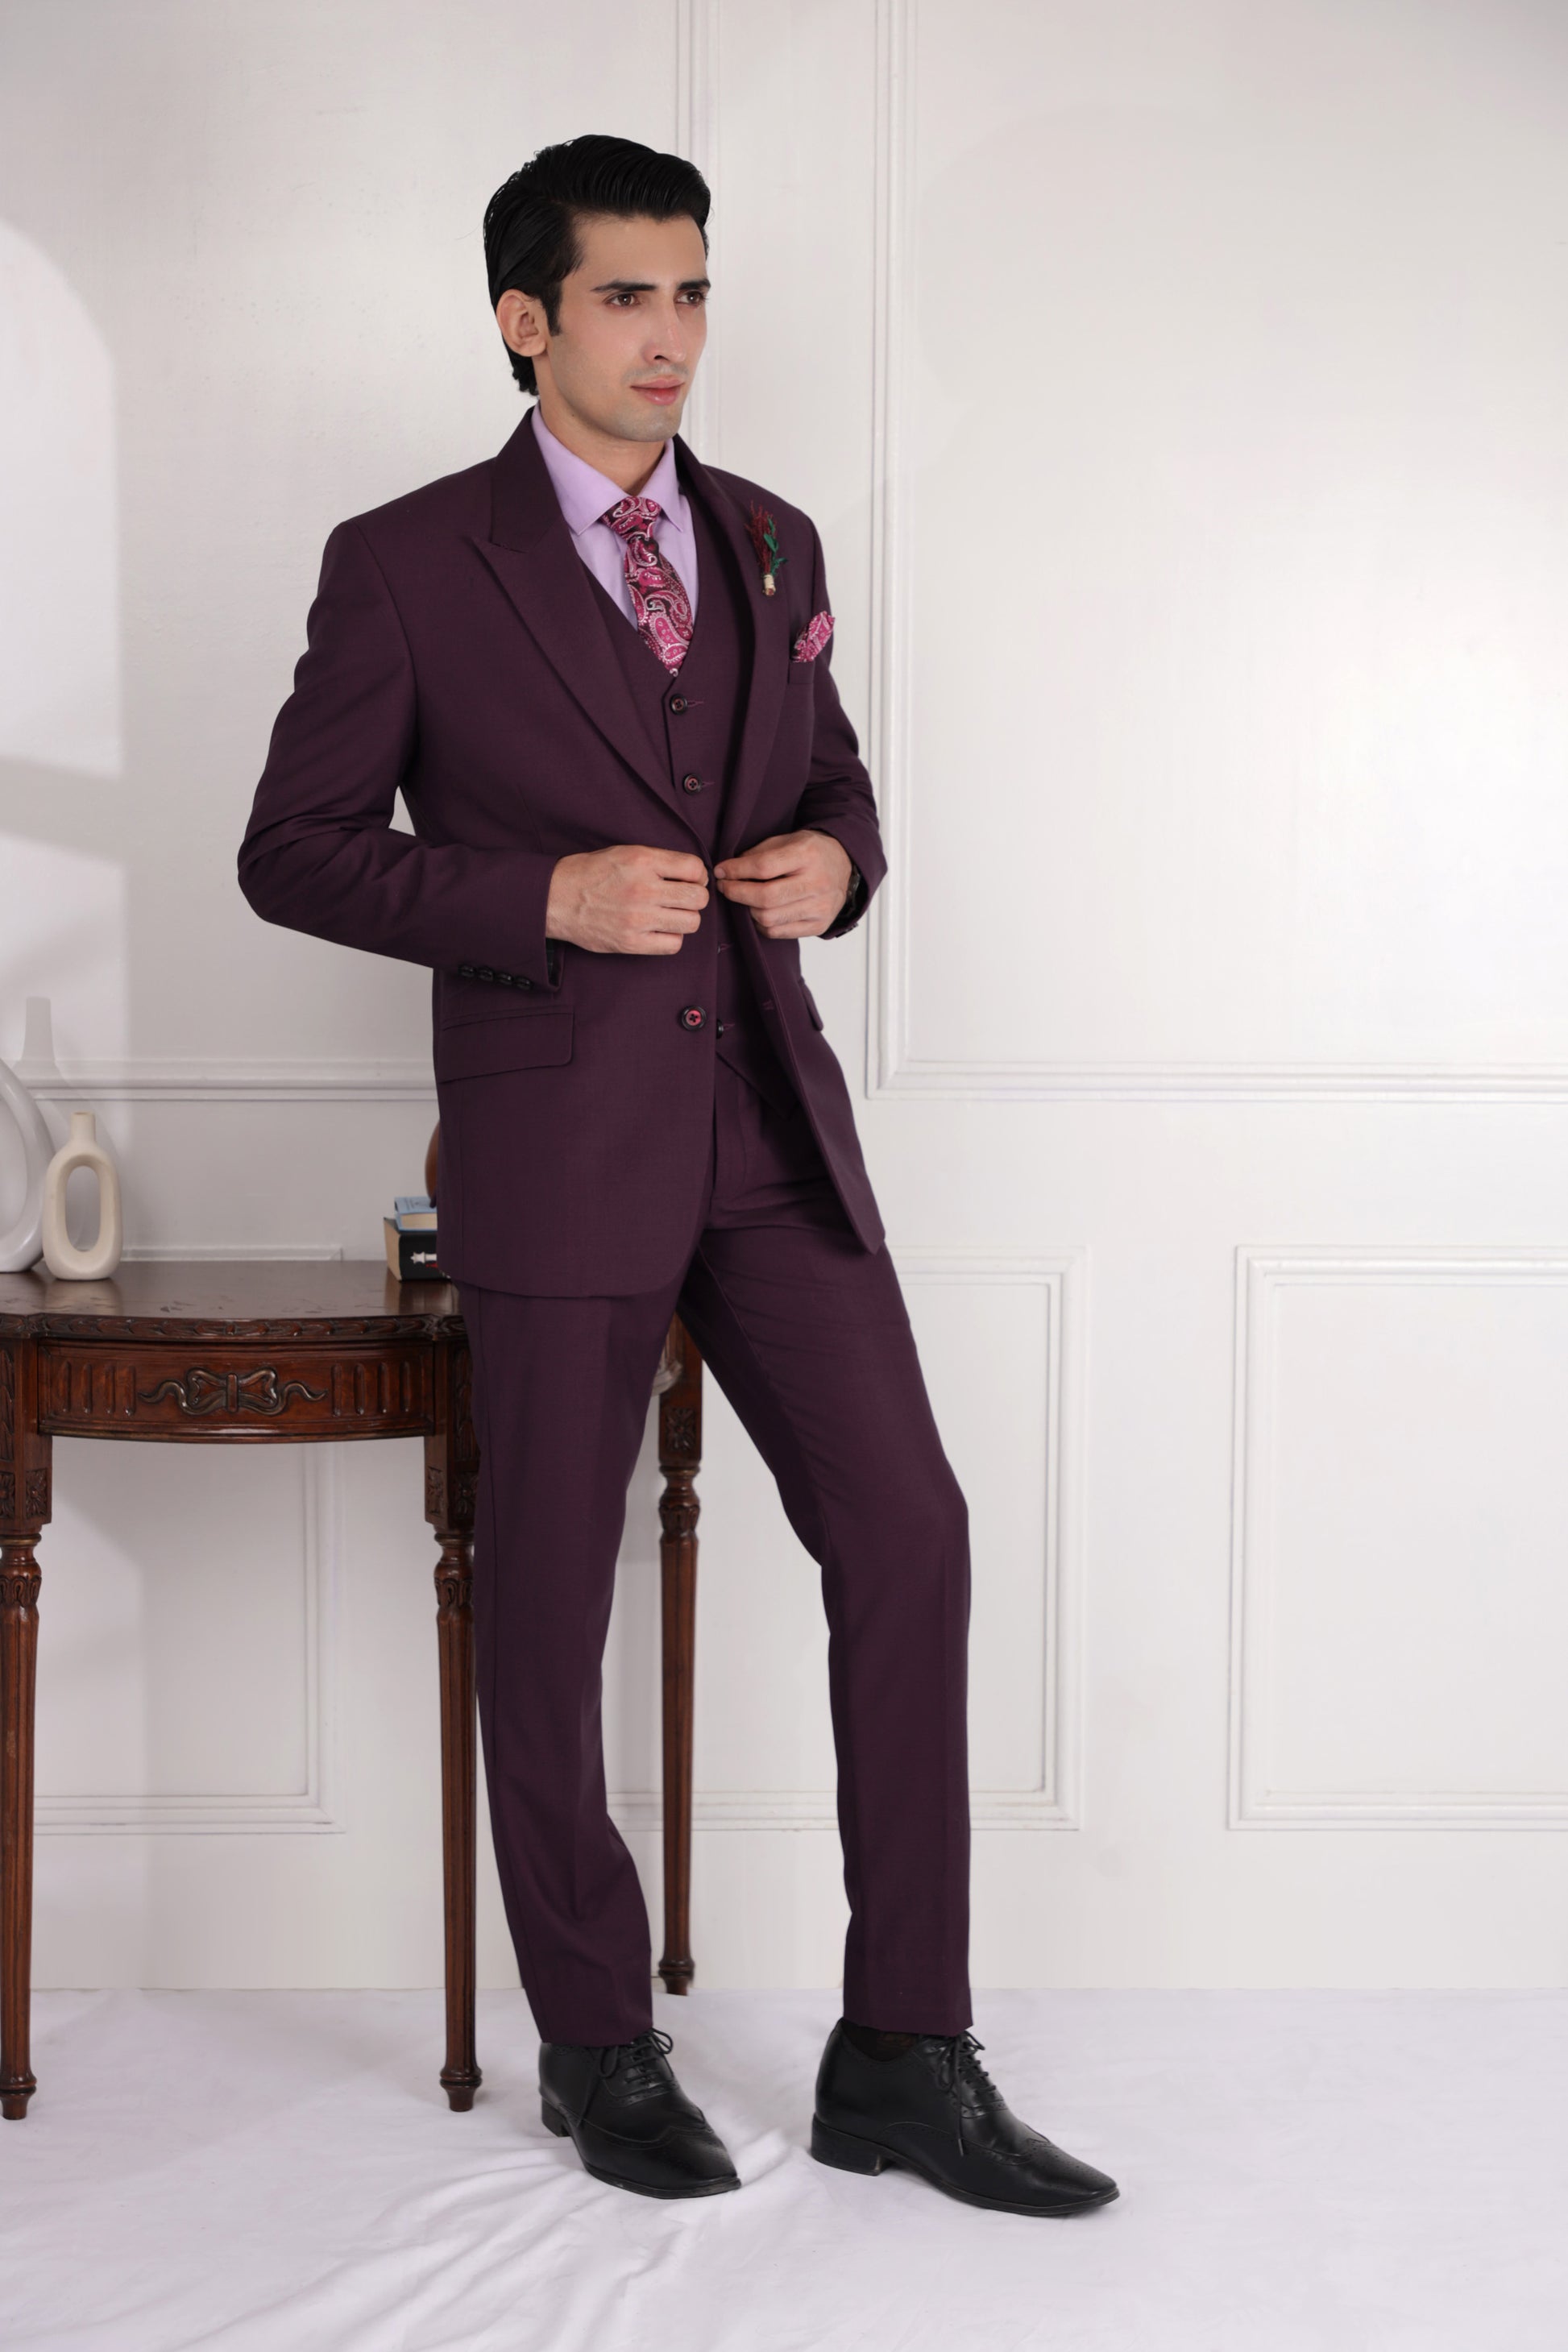 wedding suit for men zoop men wine color